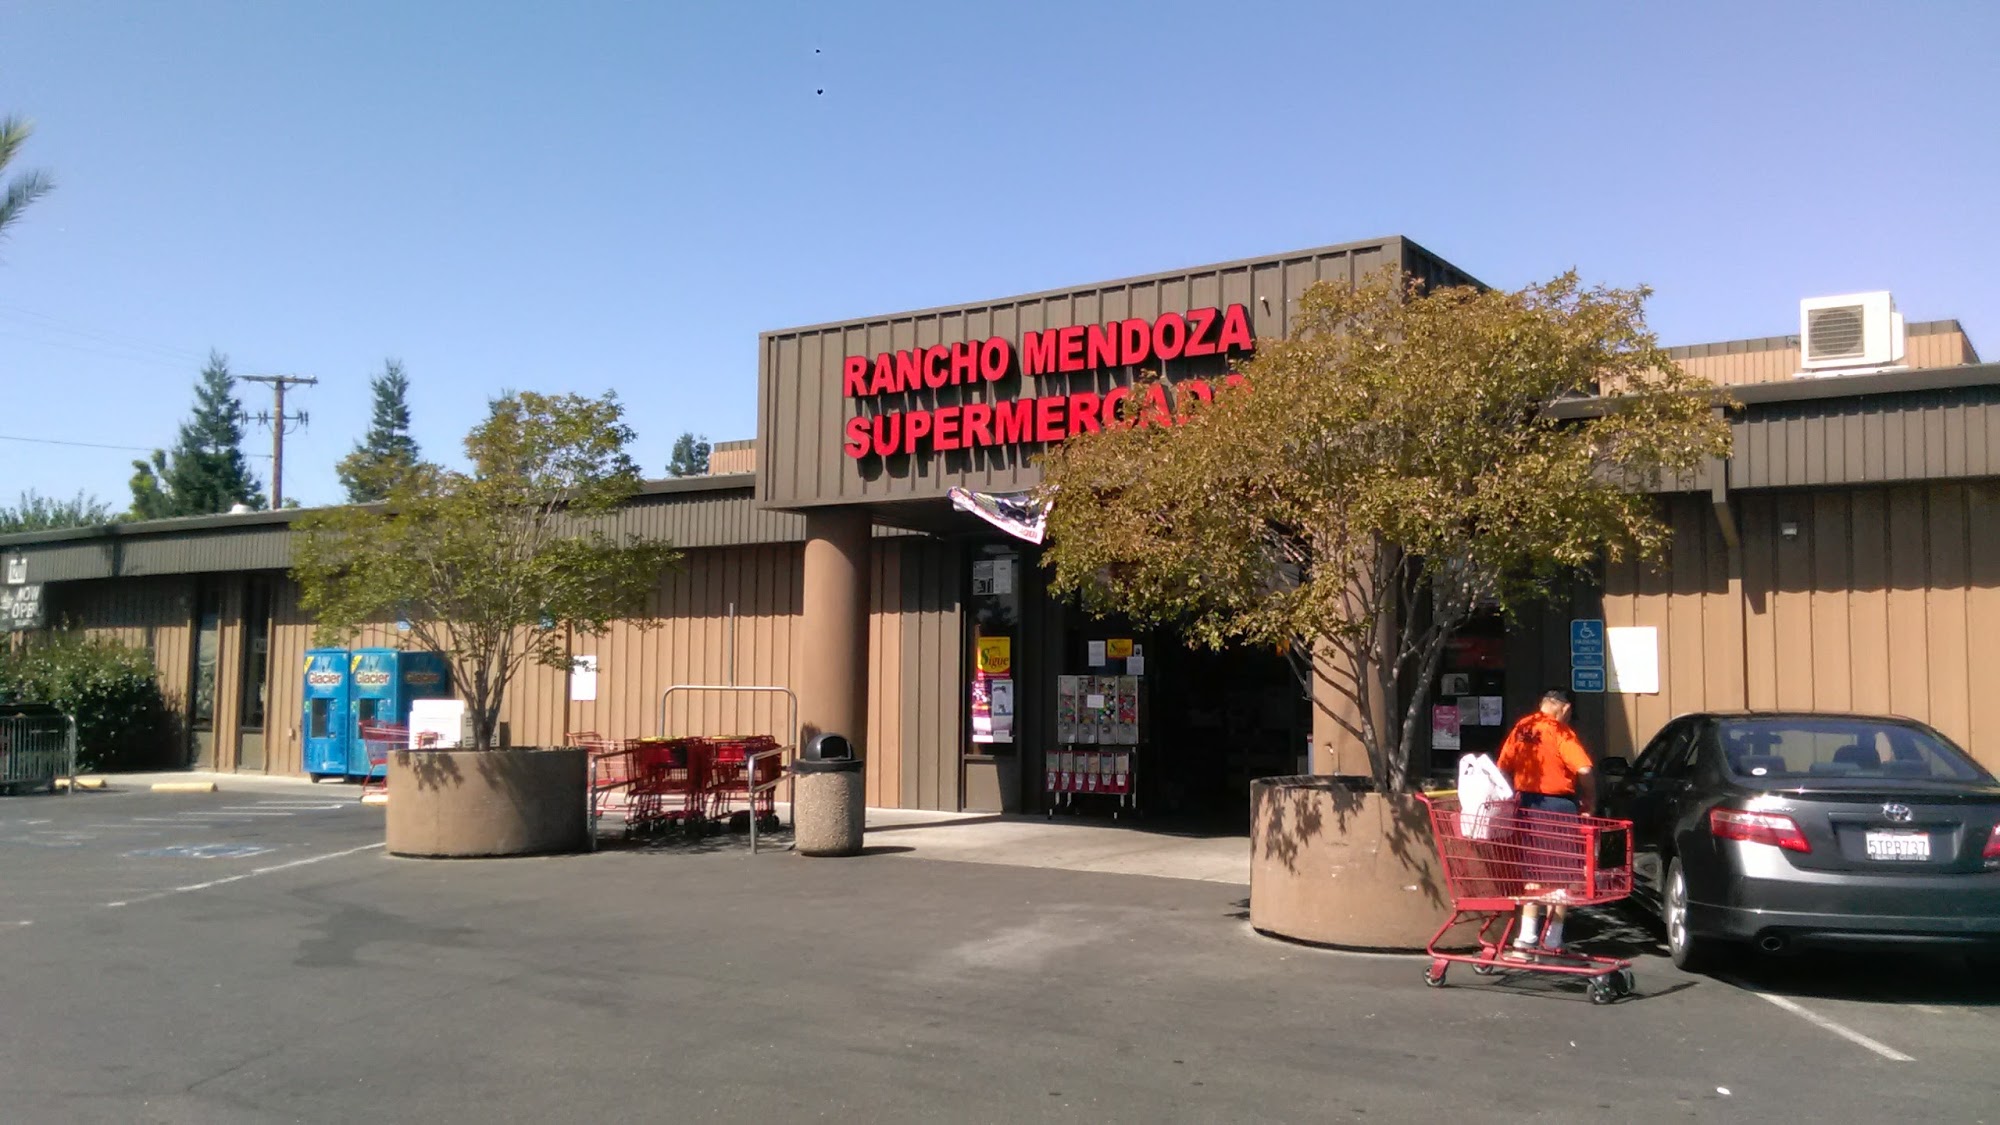 Rancho Mendoza Super Mercado